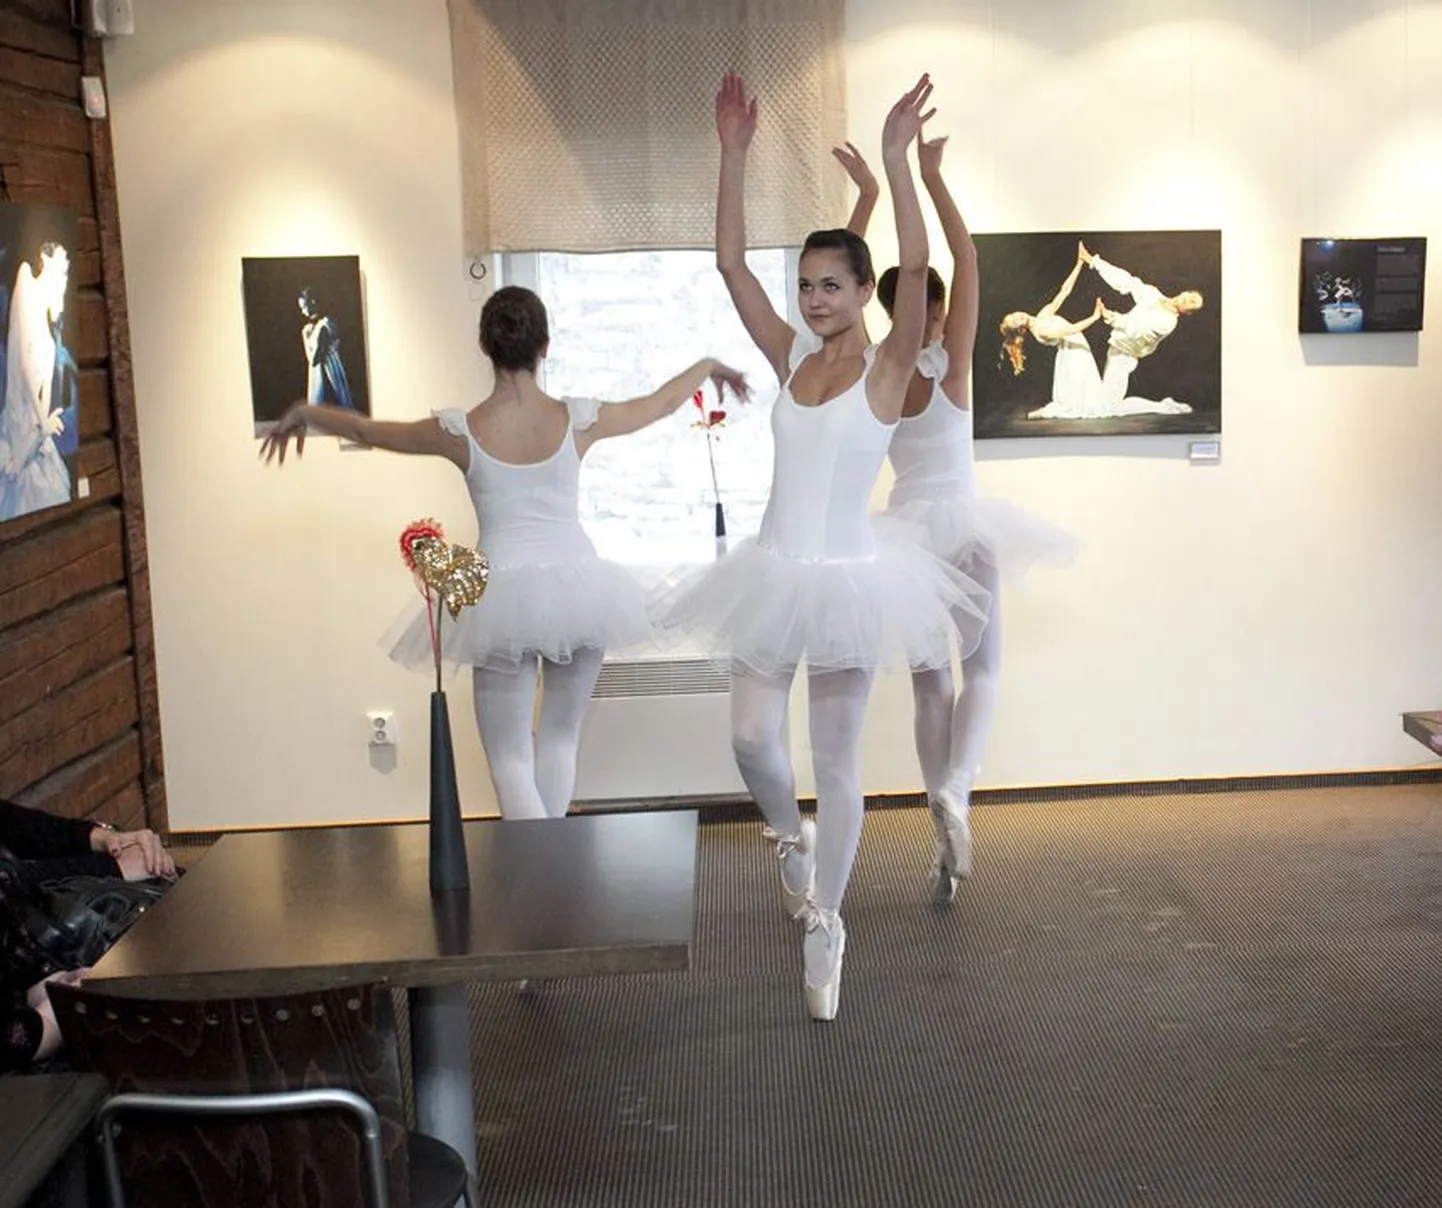 Anke Oksa balletimaalide näituse “Teine vaatus” tantsisid avatuks Kaurikooli haldjalikud balletineiud.